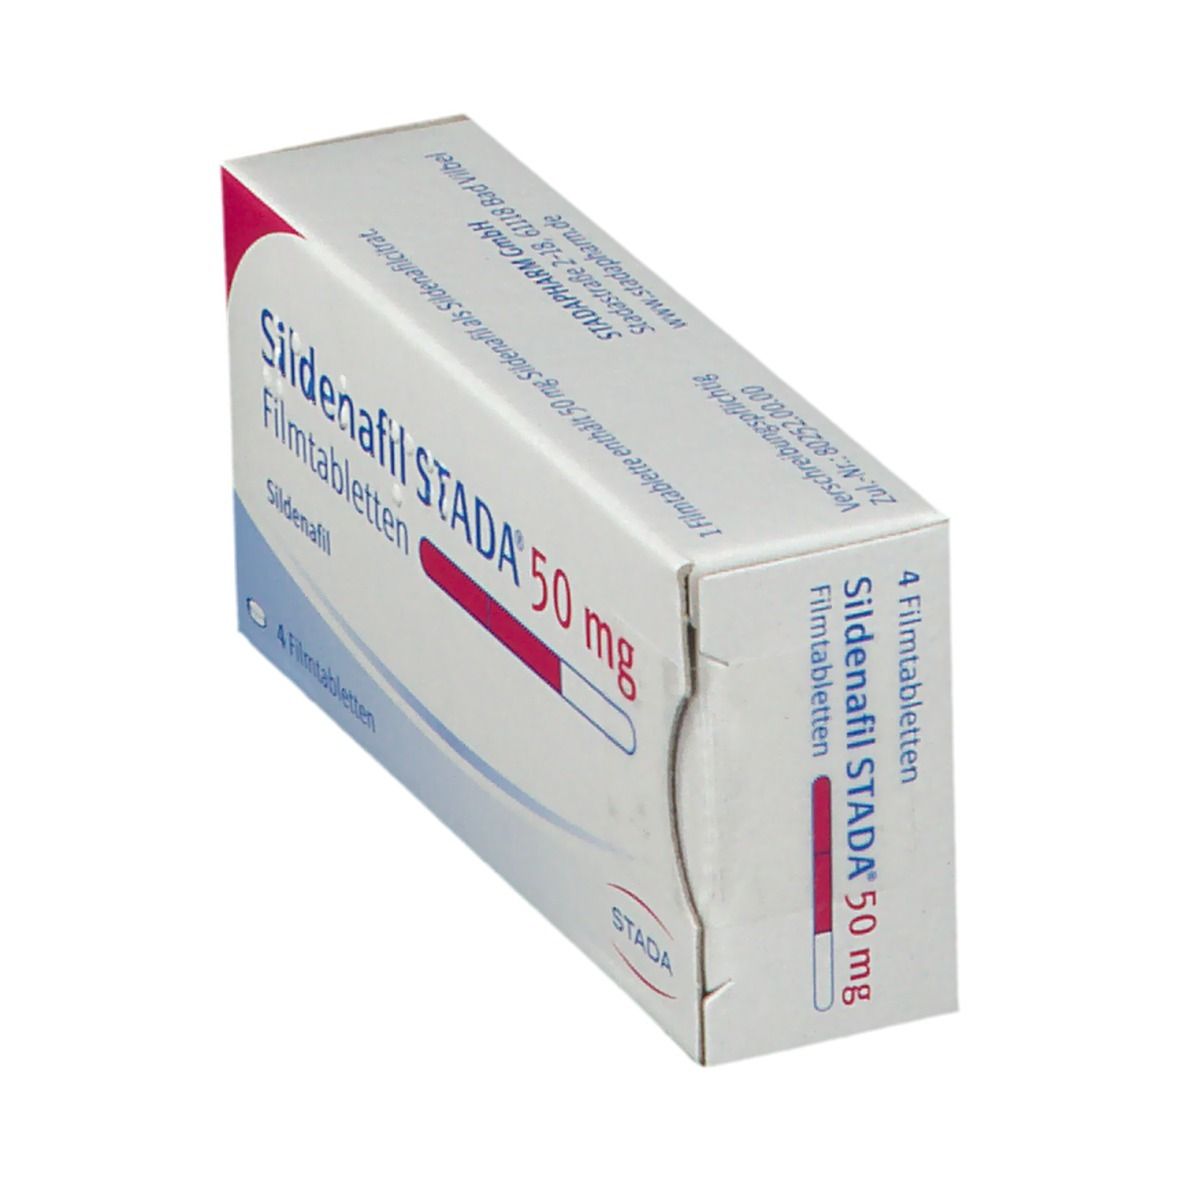 Sildenafil STADA® 50 mg